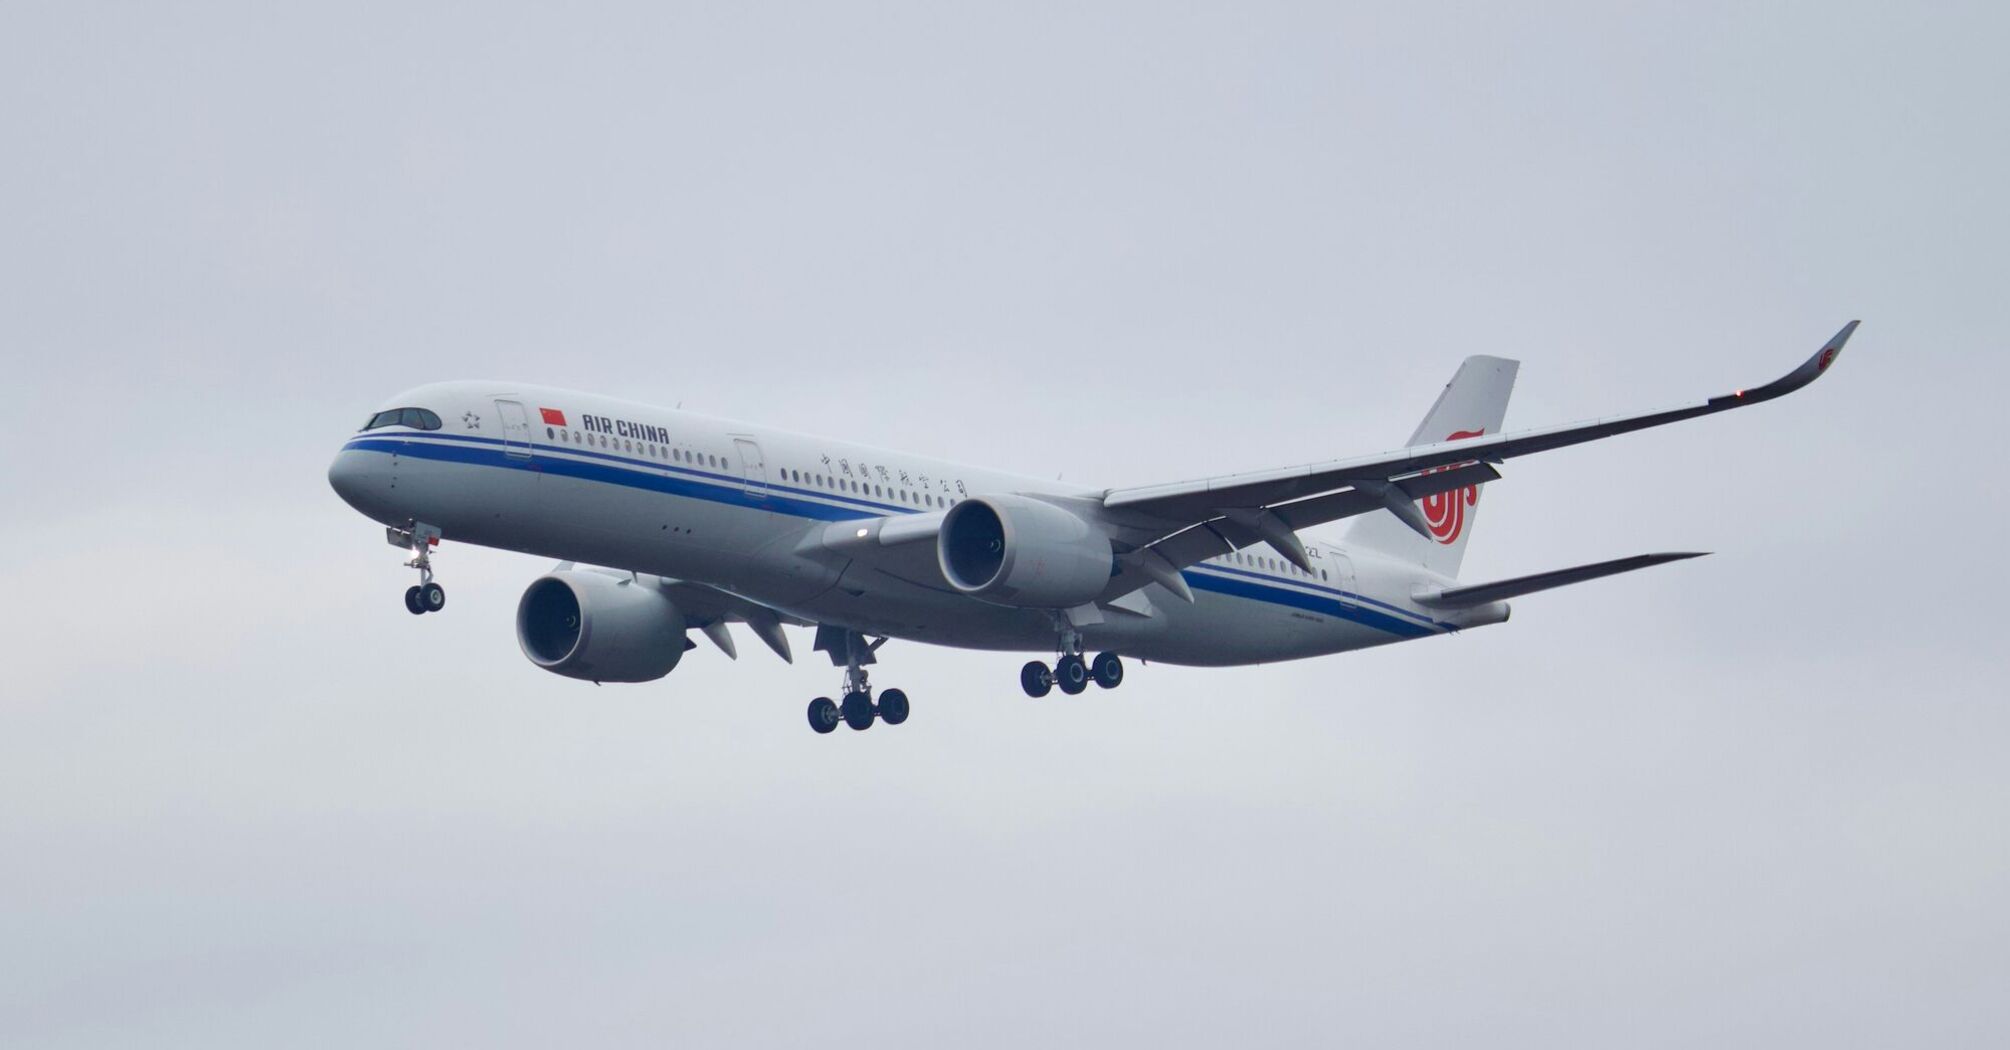 Air China Airbus A350 landing at Frankfurt Airport